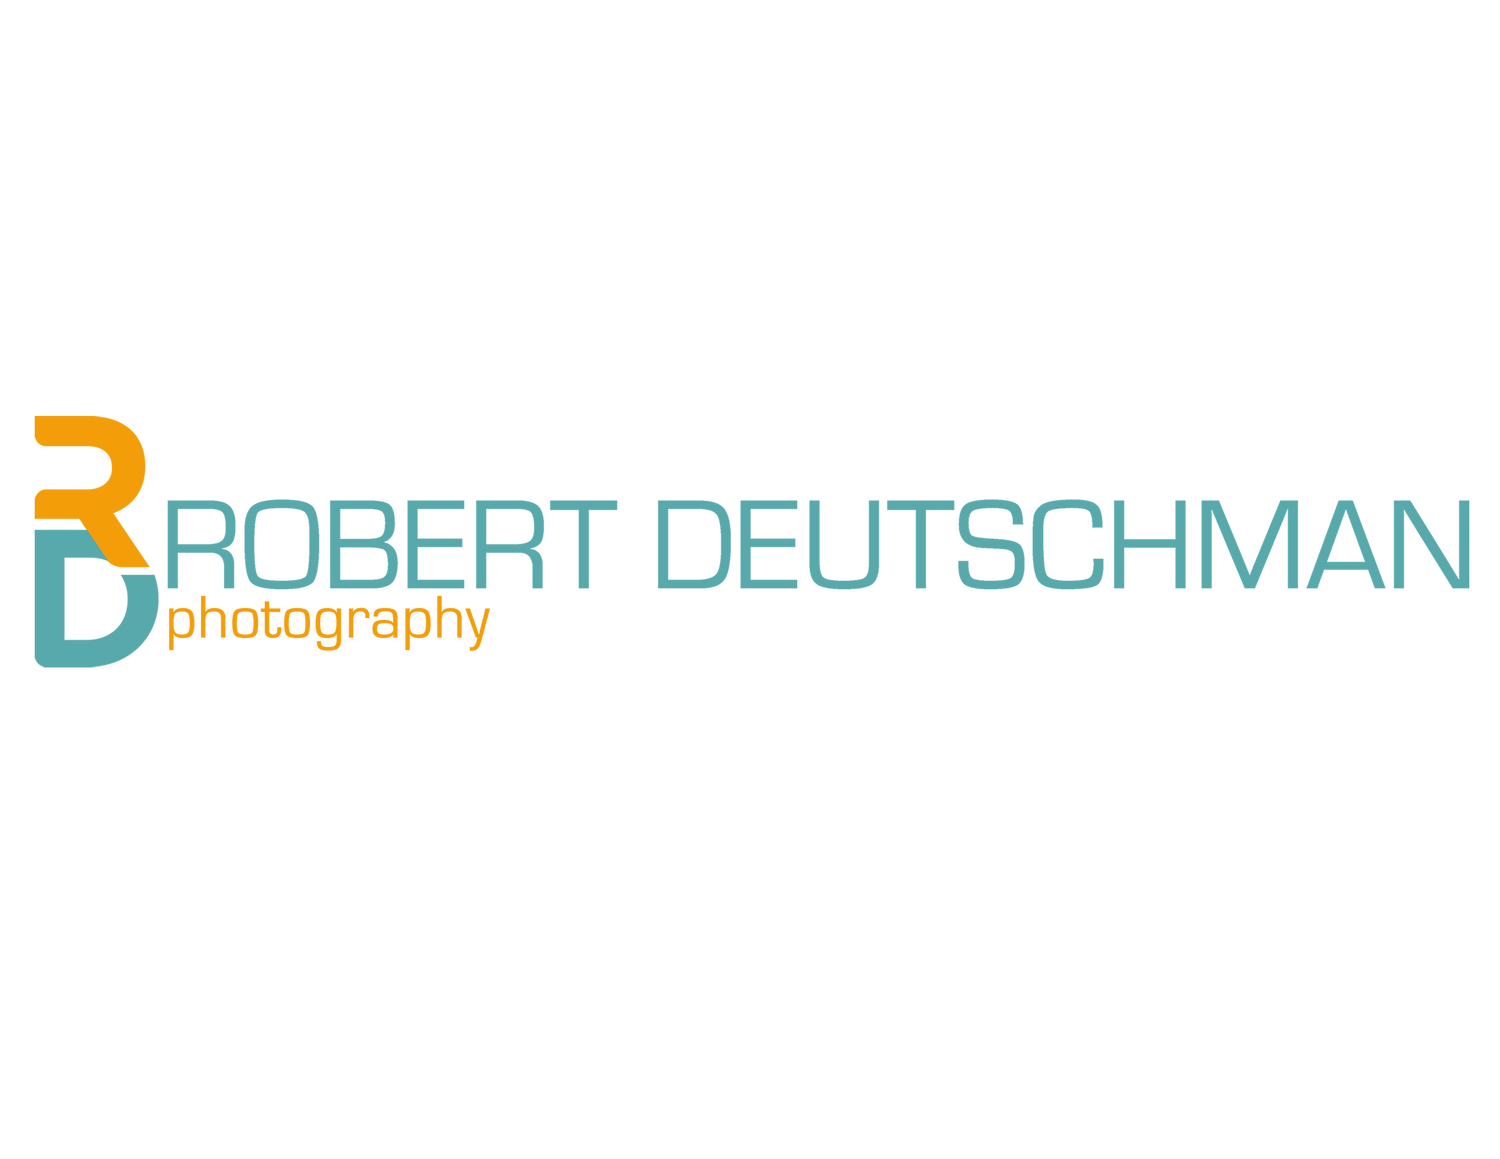 ROBERT DEUTSCHMAN